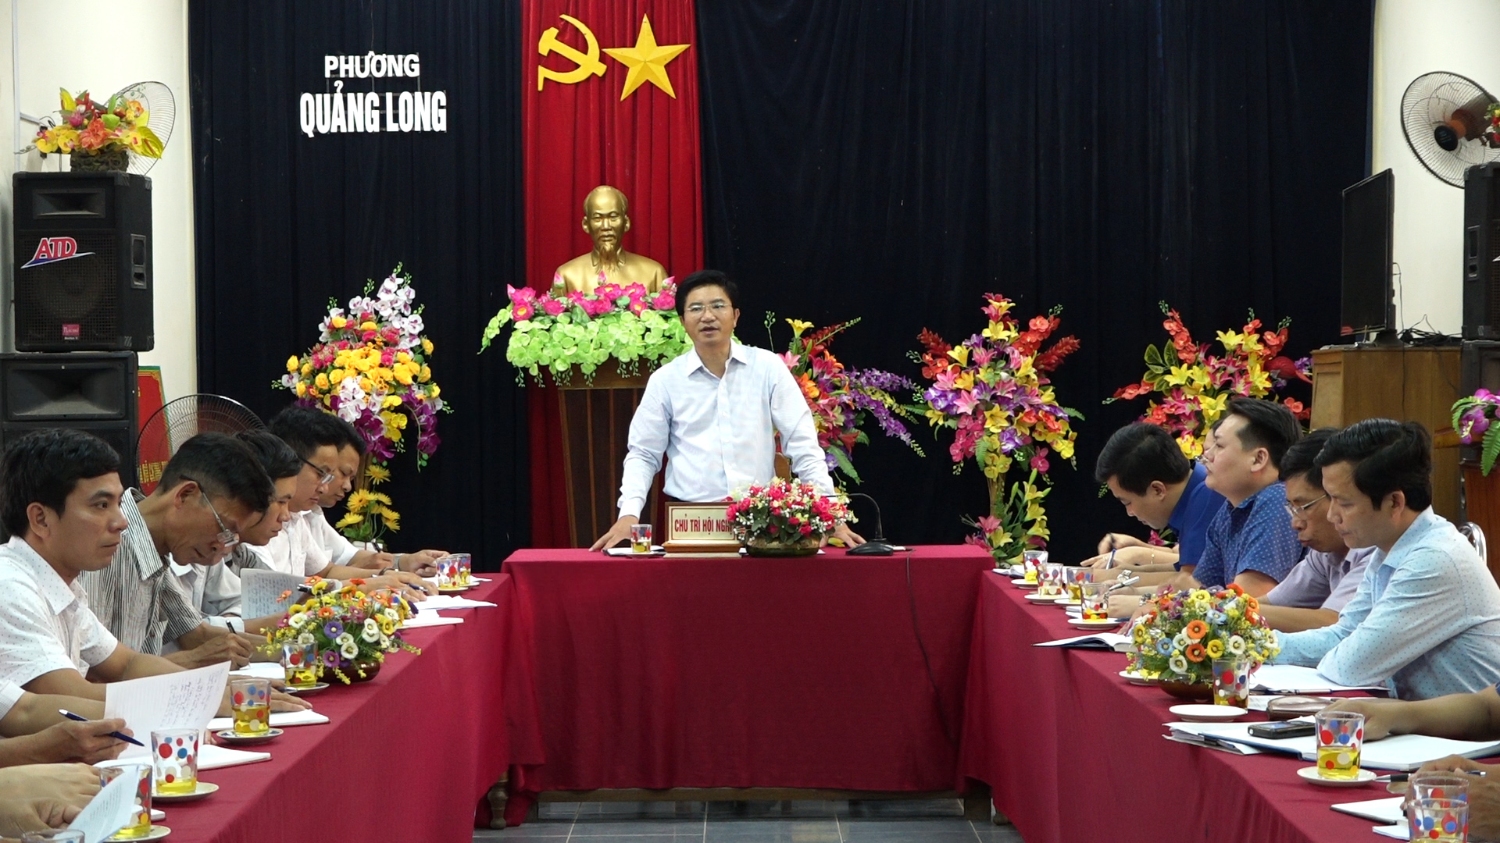 Đồng chí Bí thư Thị ủy Ba Đồn làm việc với Đảng ủy phường Quảng Long.